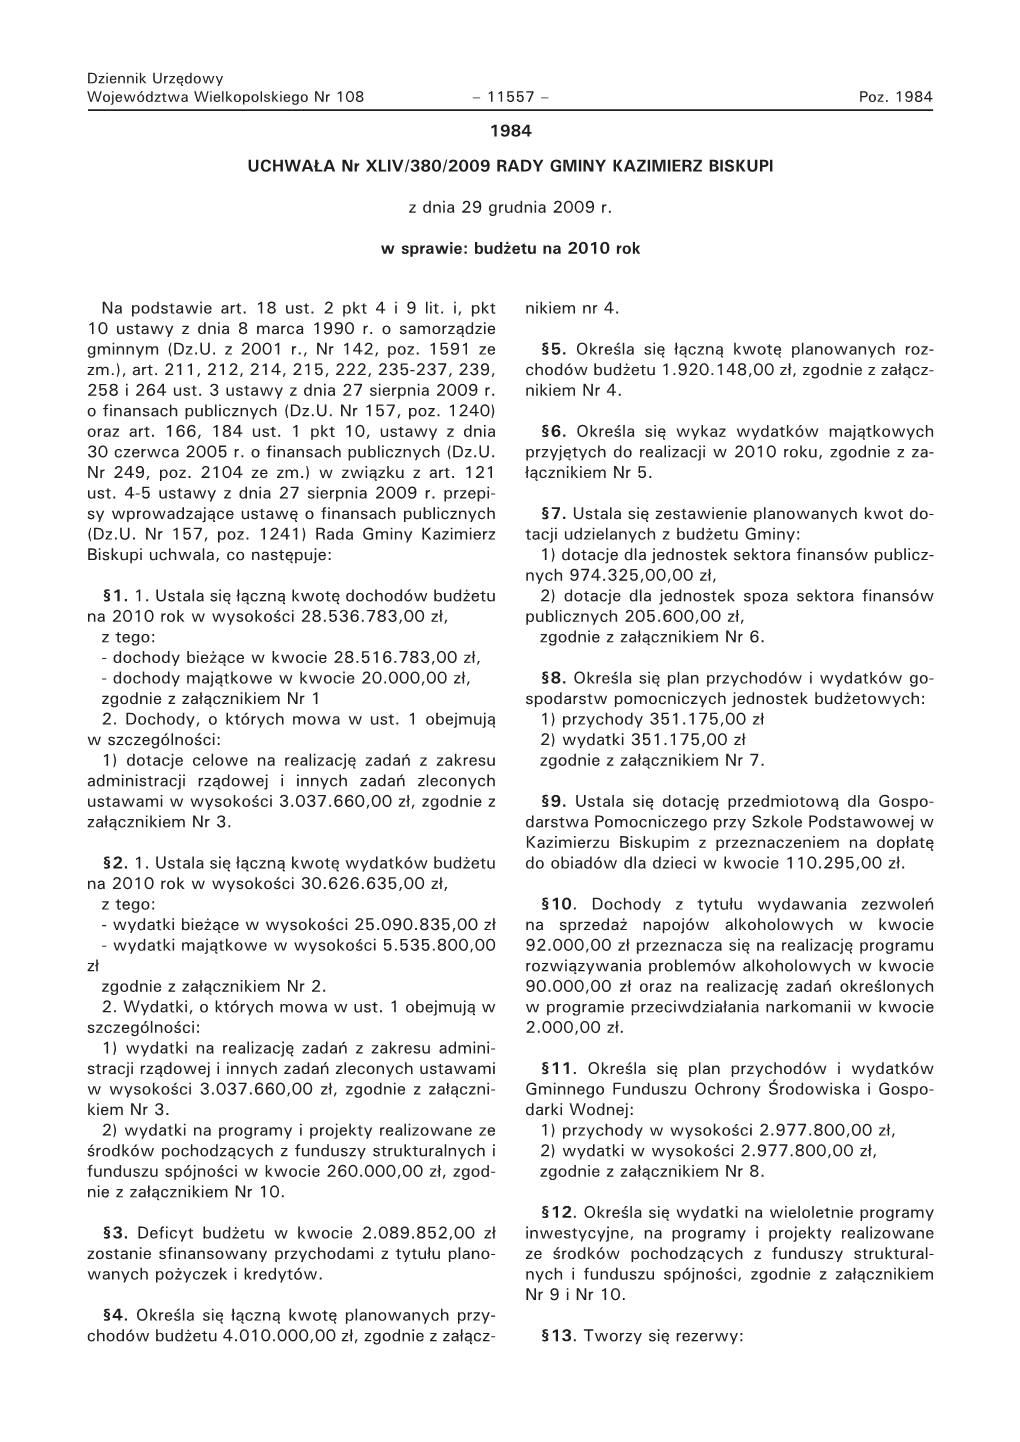 Dziennik Nr 108-2010 Pozycja 1984.Pdf